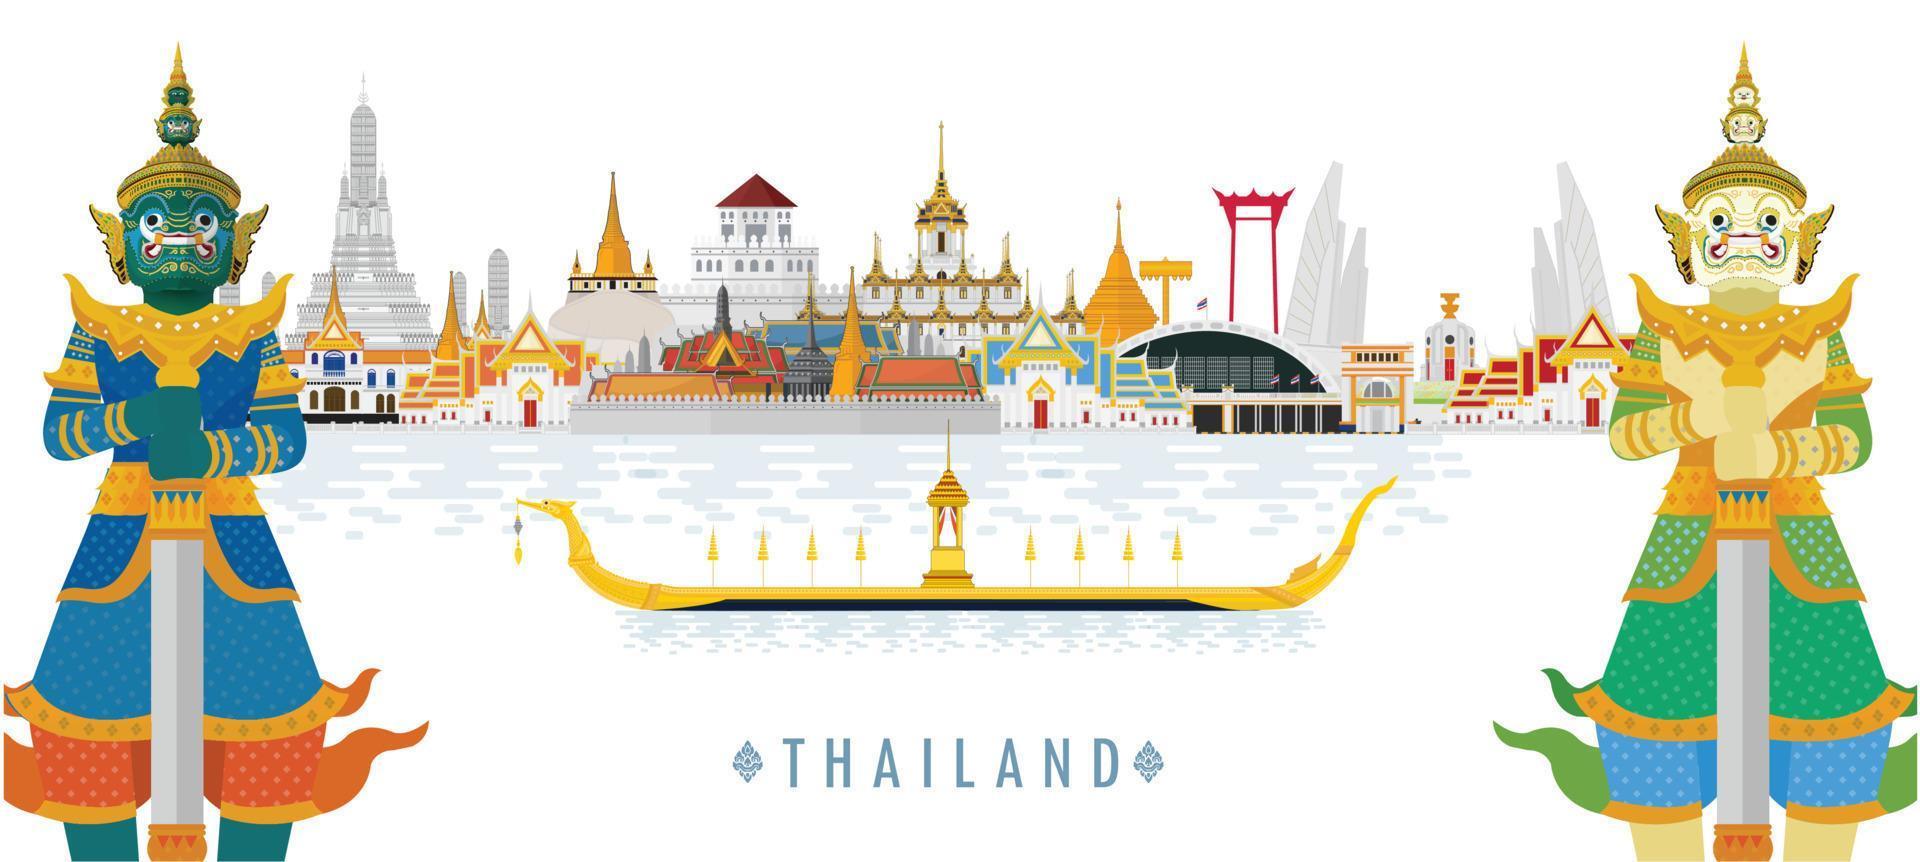 willkommen in thailand und wächterriese, thailand reisekonzept. der goldene große palast in thailand im flachen stil zu besuchen vektor